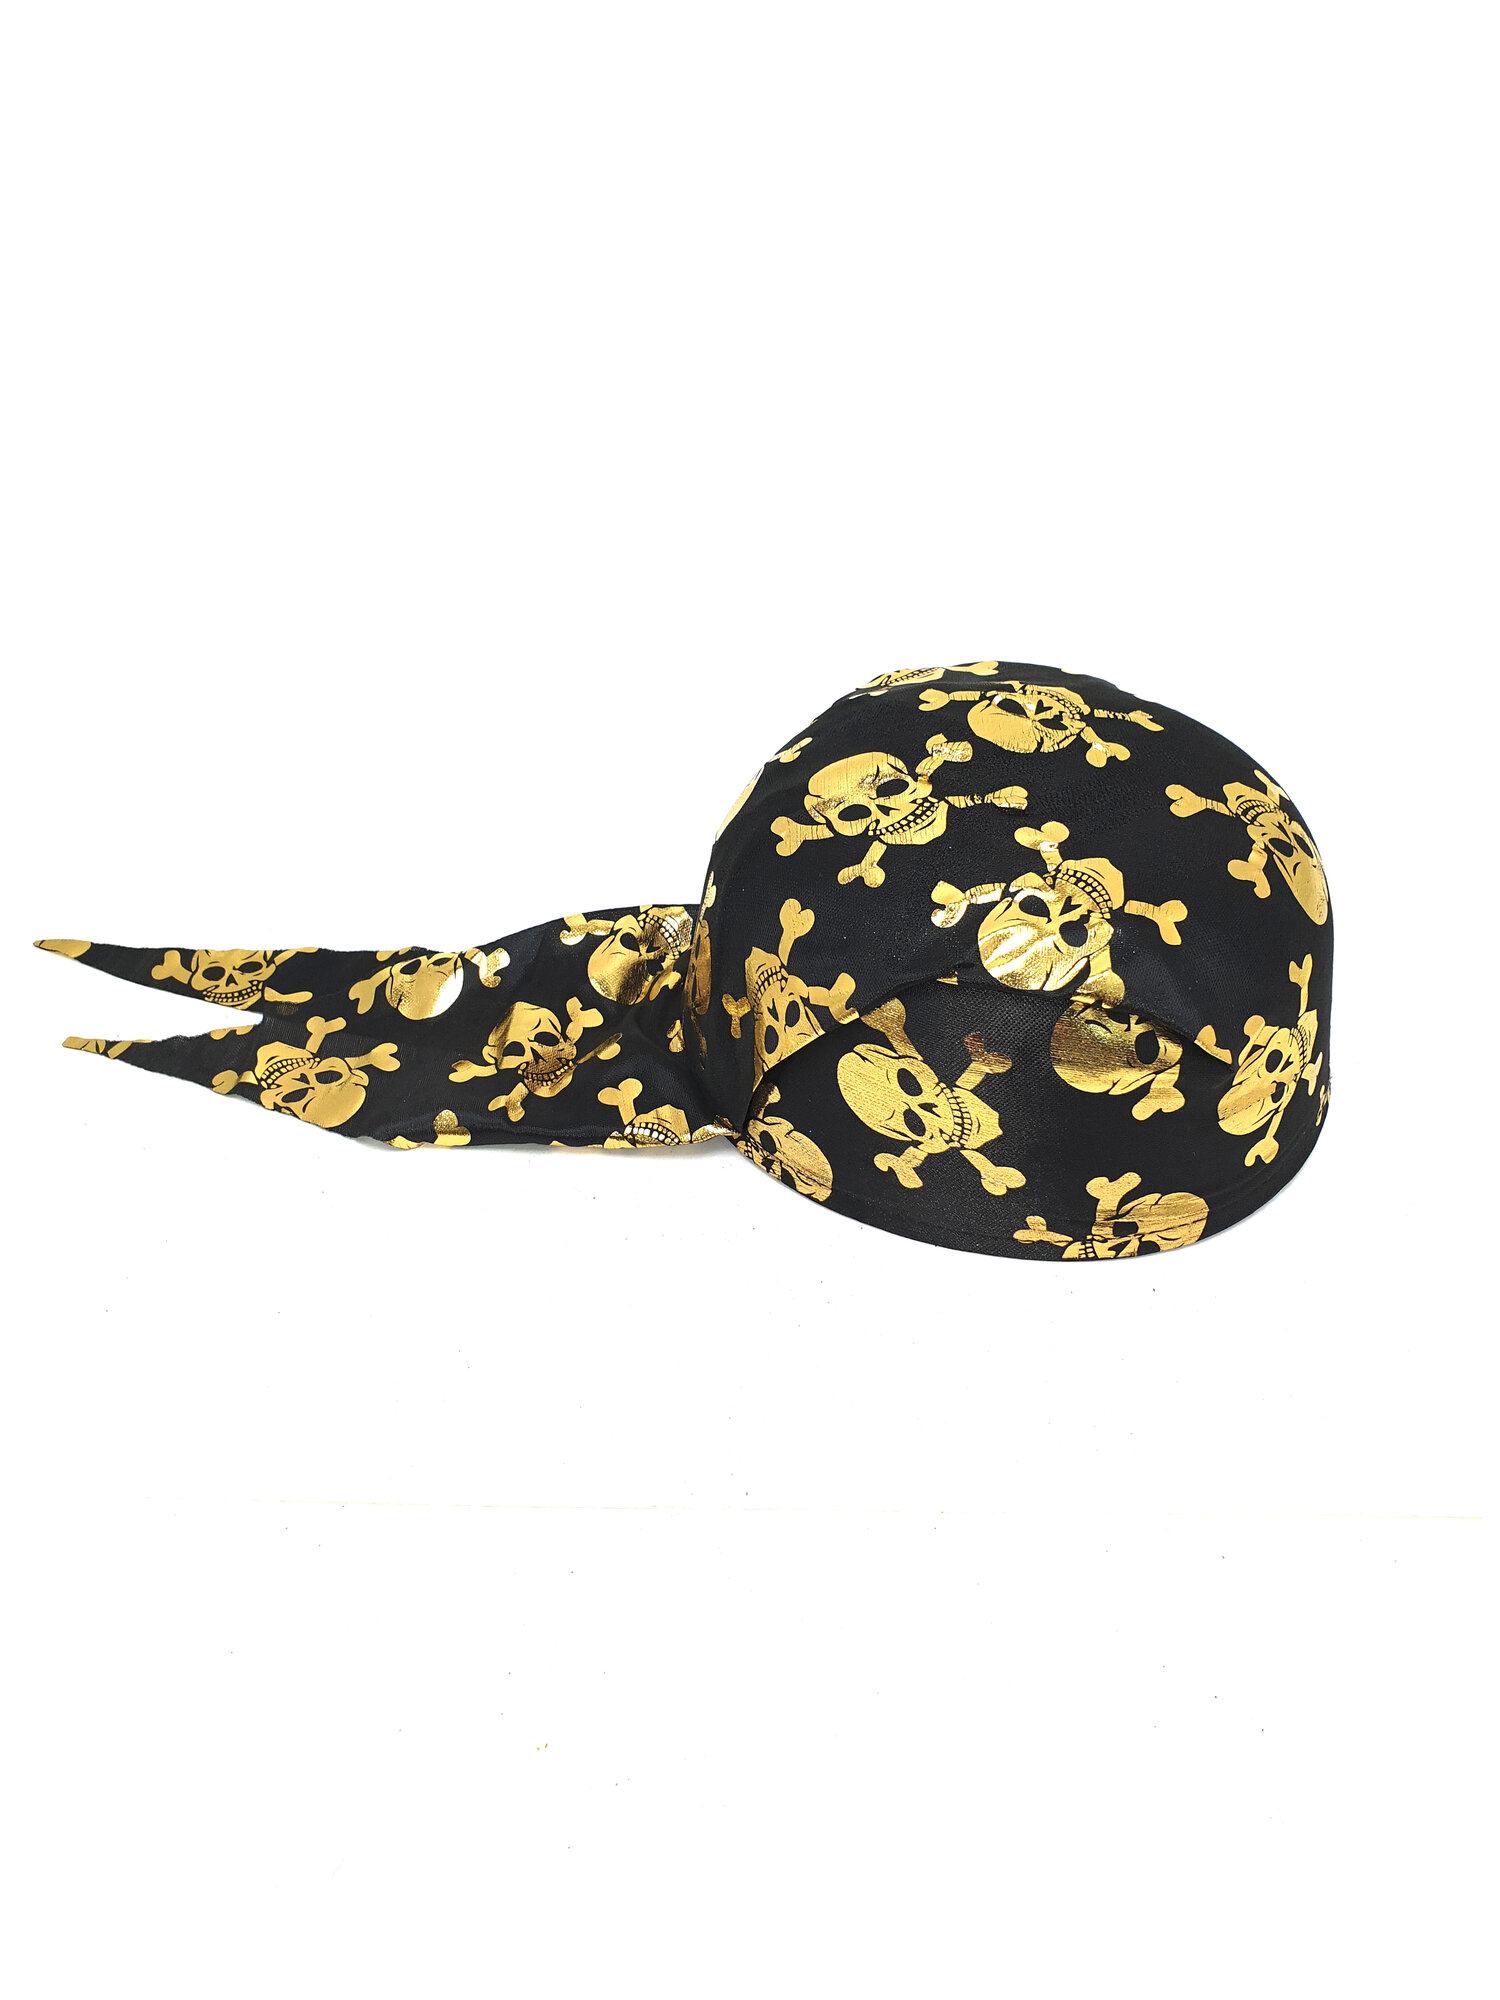 Карнавальная шляпа Пират, золотой. Высота-10 см, окружность головы-60 см.